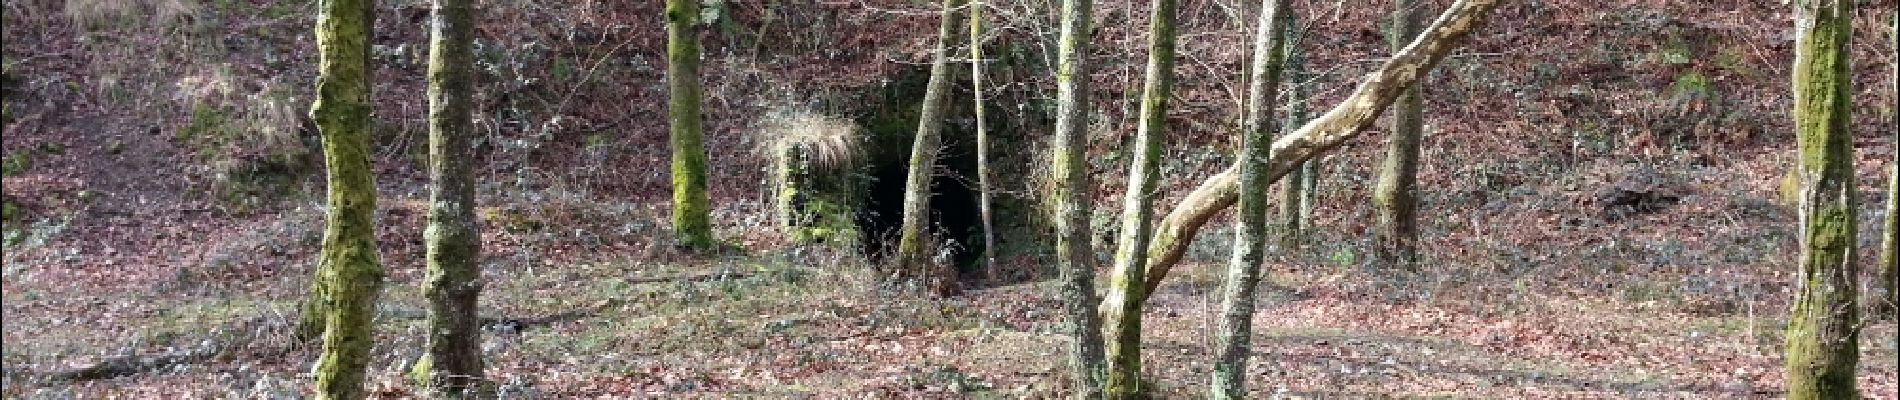 POI Irun - tunnel   - Photo